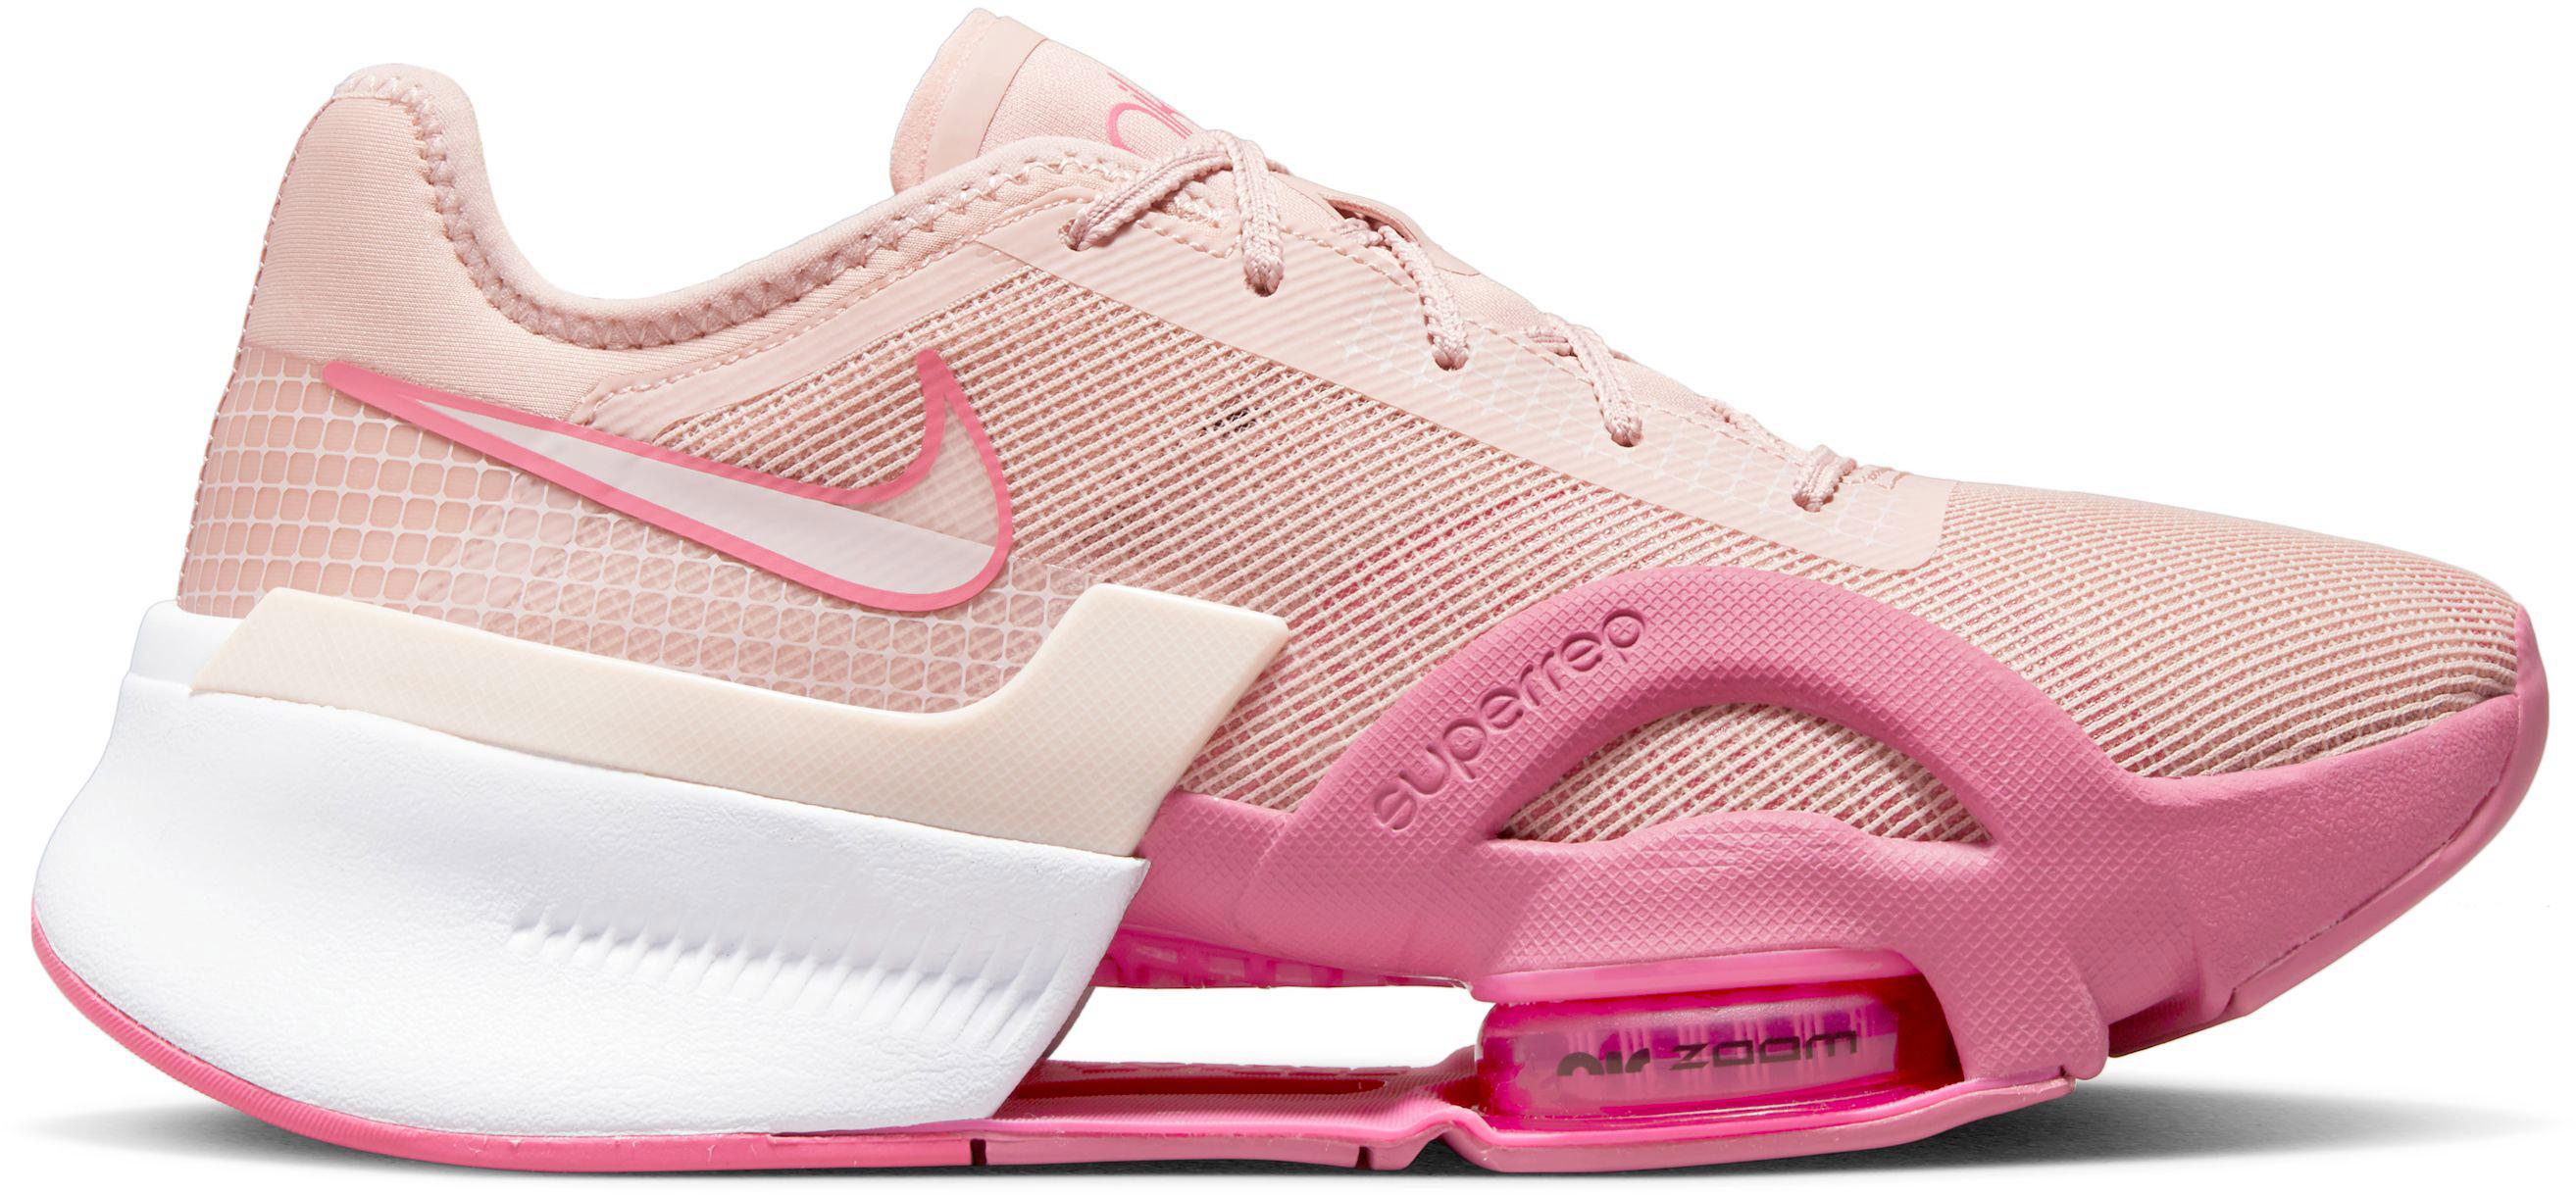 Nike Zoom SuperRep 3 Fitnessschuhe Damen pink oxford-light soft pink-pinksicle im Online von SportScheck kaufen